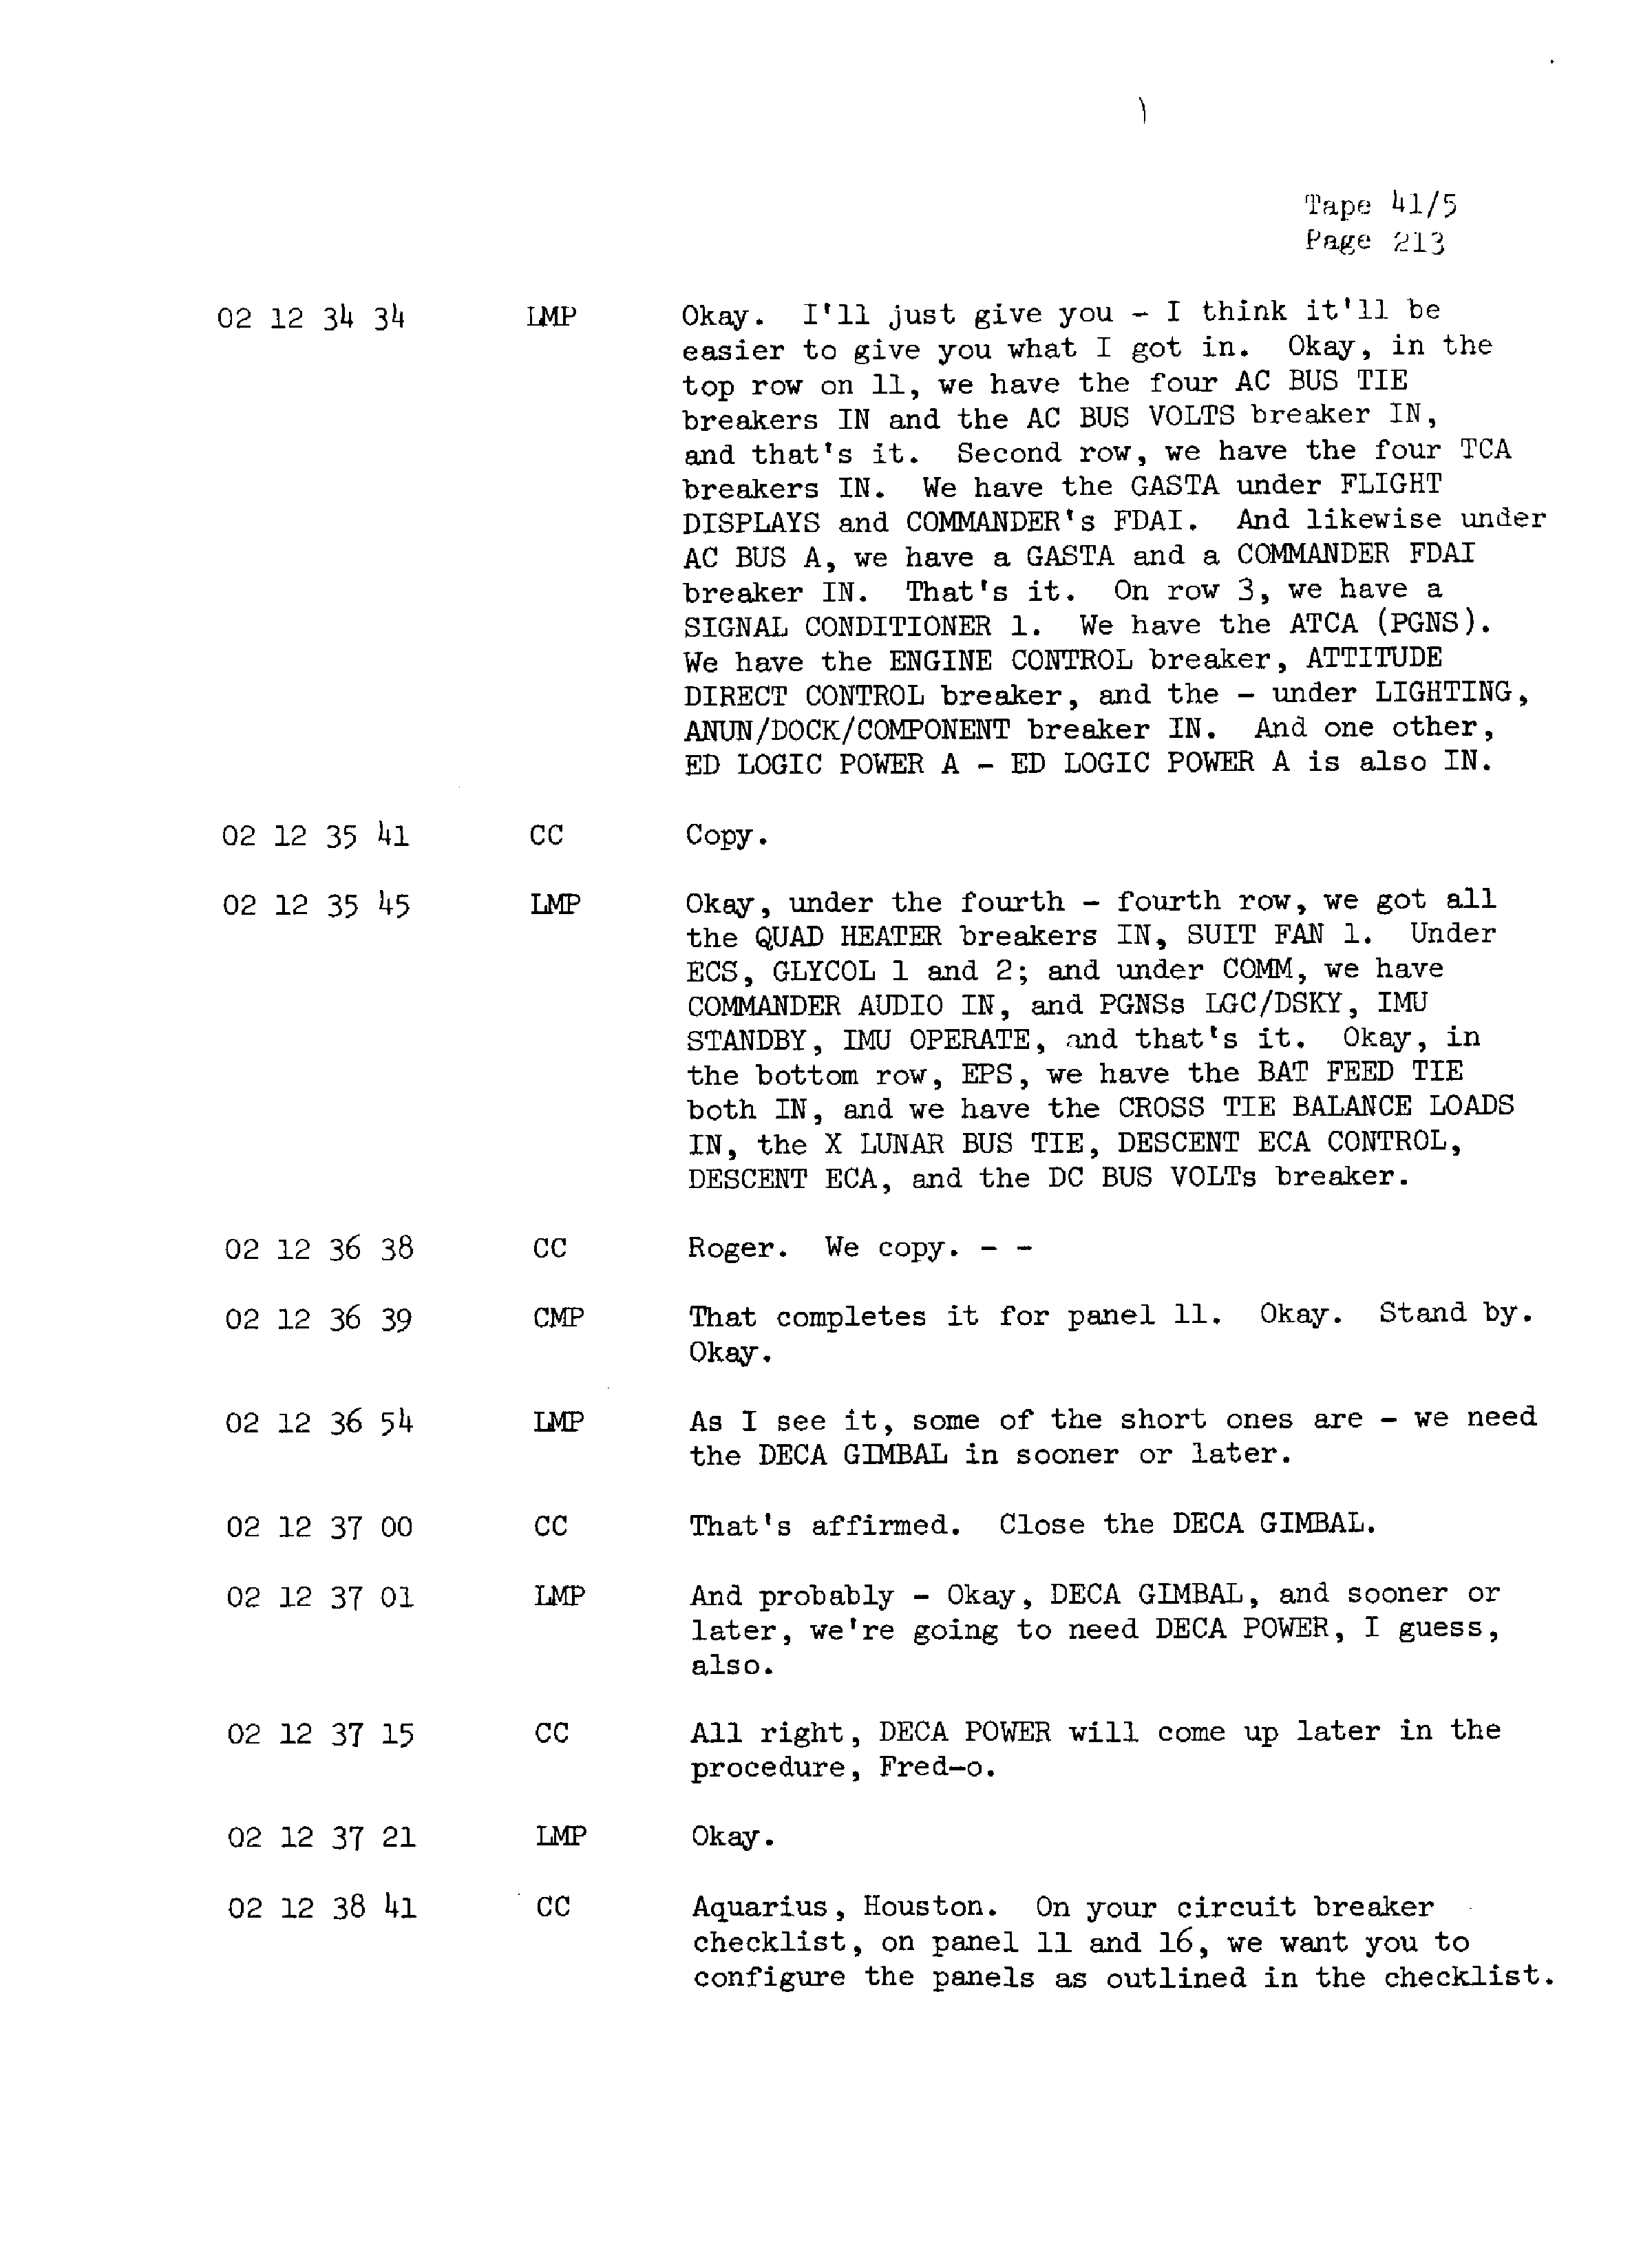 Page 220 of Apollo 13’s original transcript